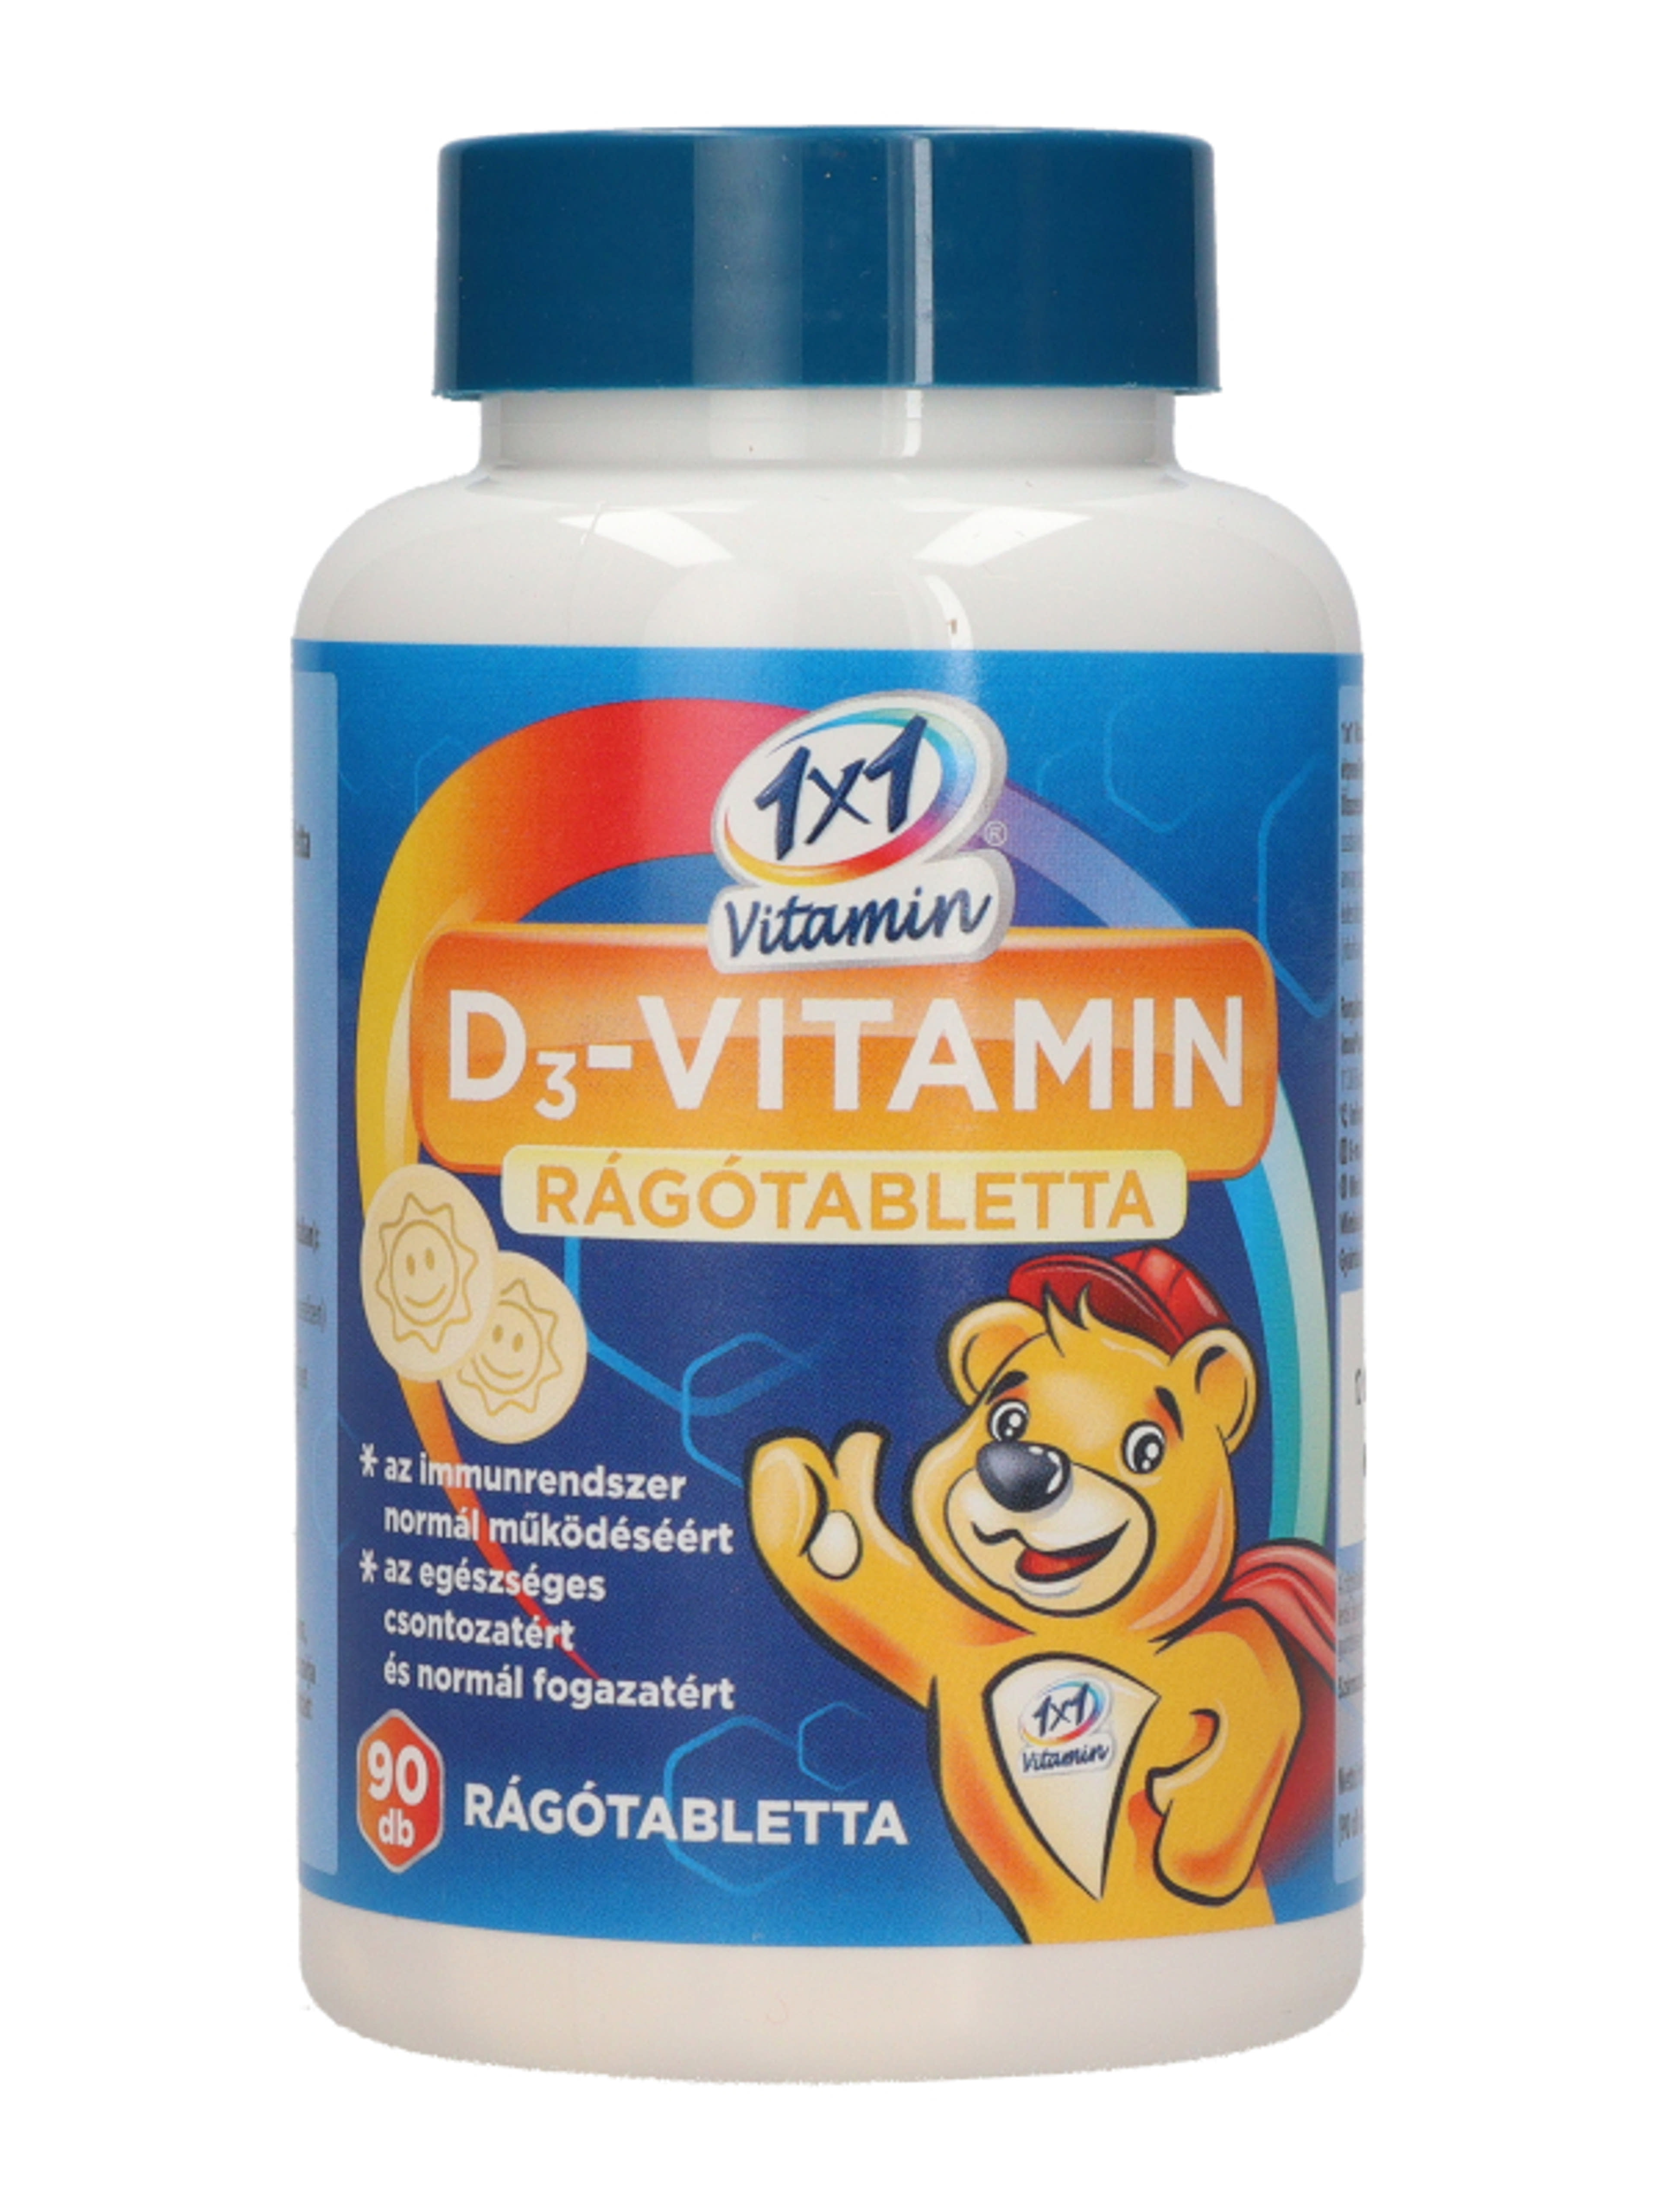 1x1 D3-vitamin rágótabletta napocskás - 90 db